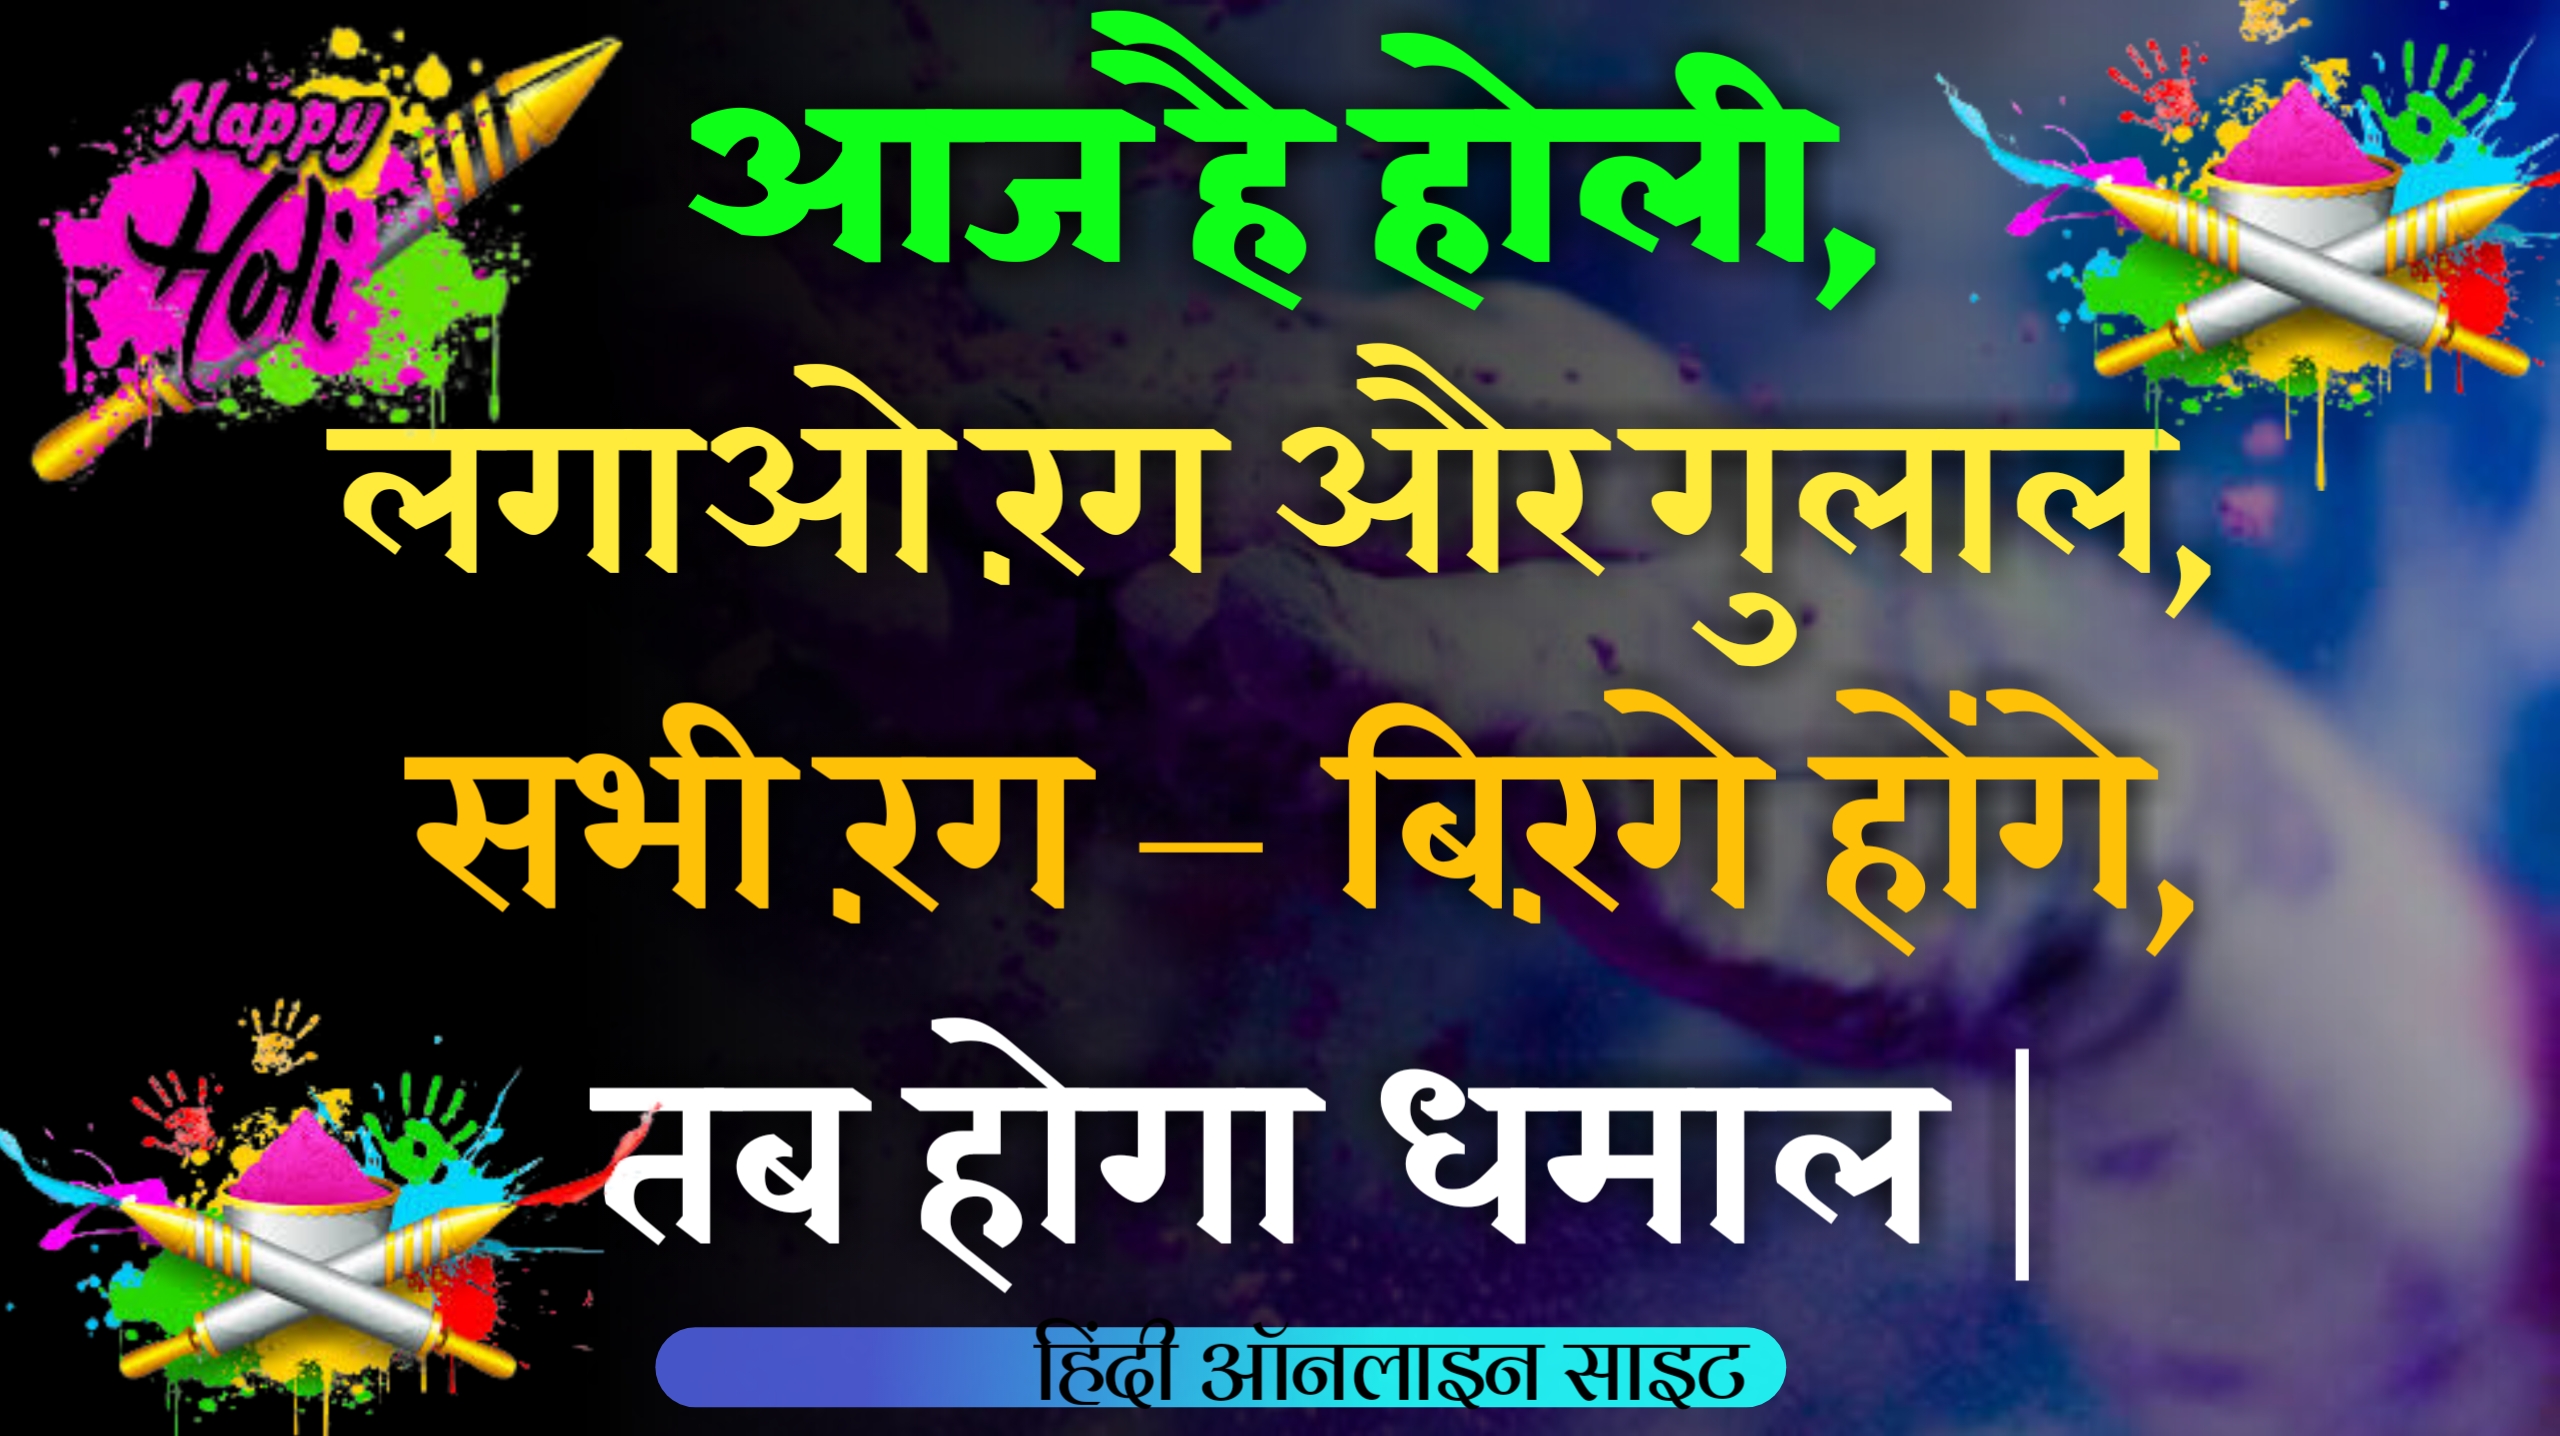 होली पर शायरी 2023 | Holi shayari in Hindi | top new Holi shayari in Hindi 2023 - Happy Holi Shayari 2023 in Hindi,Holi WhatsApp status message 2023